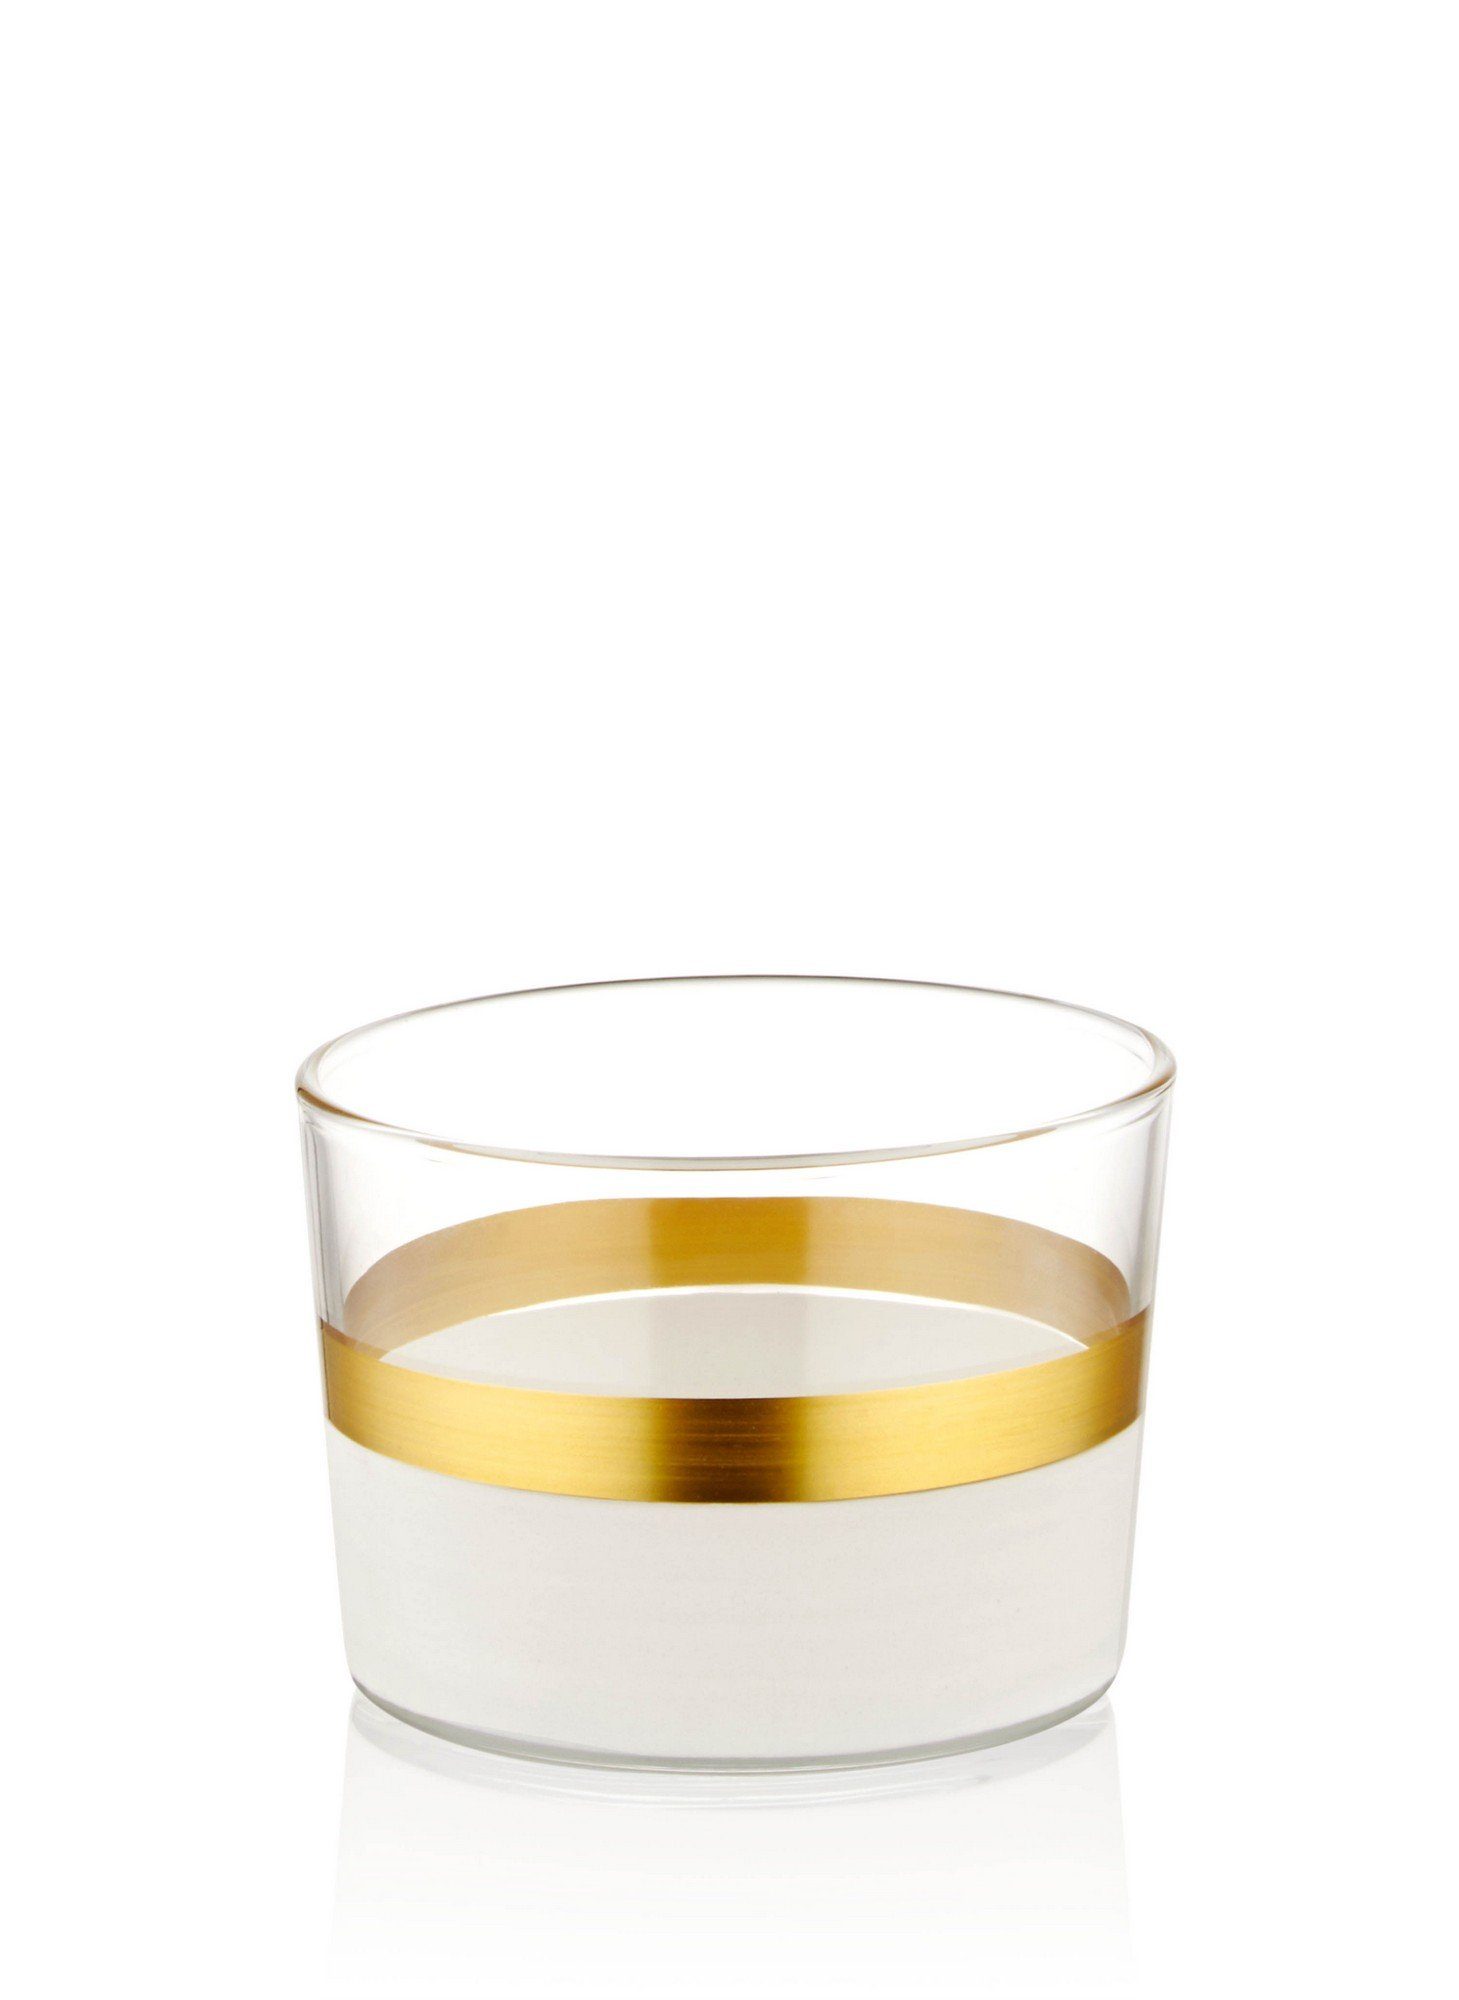 Glas TMA4765, Schüsseln, Weiß,Gold, Schüssel Concept Hermia 100%